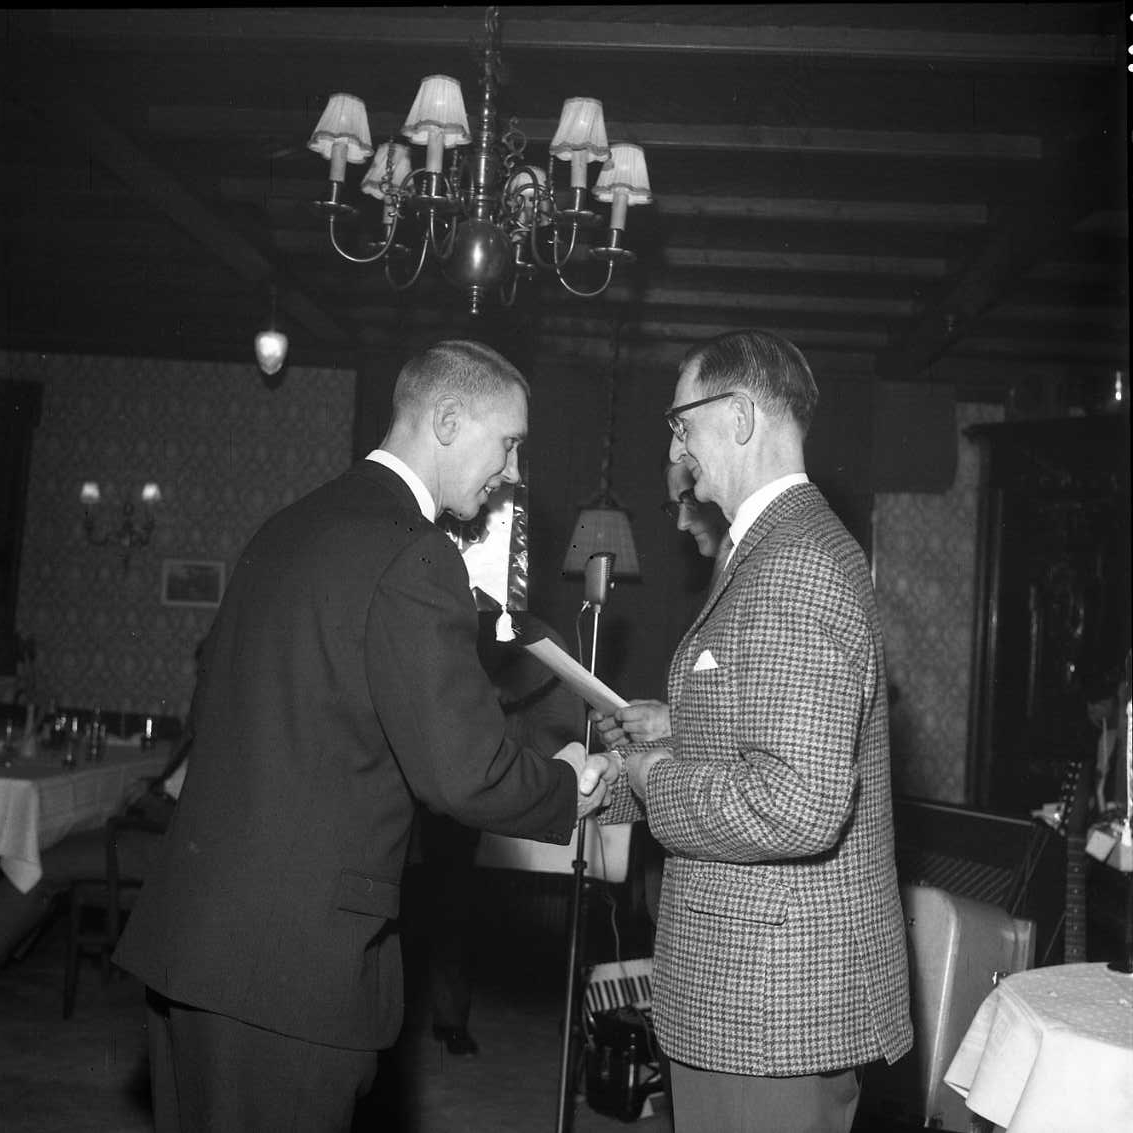 Två män handhälsar, en yngre i mörk kostym med slips och en äldre - Bertil Ander - i rutig blazer och udda byxa. Det är utdelning av utmärkelser i samband med årsmöte för Gränna AIS.